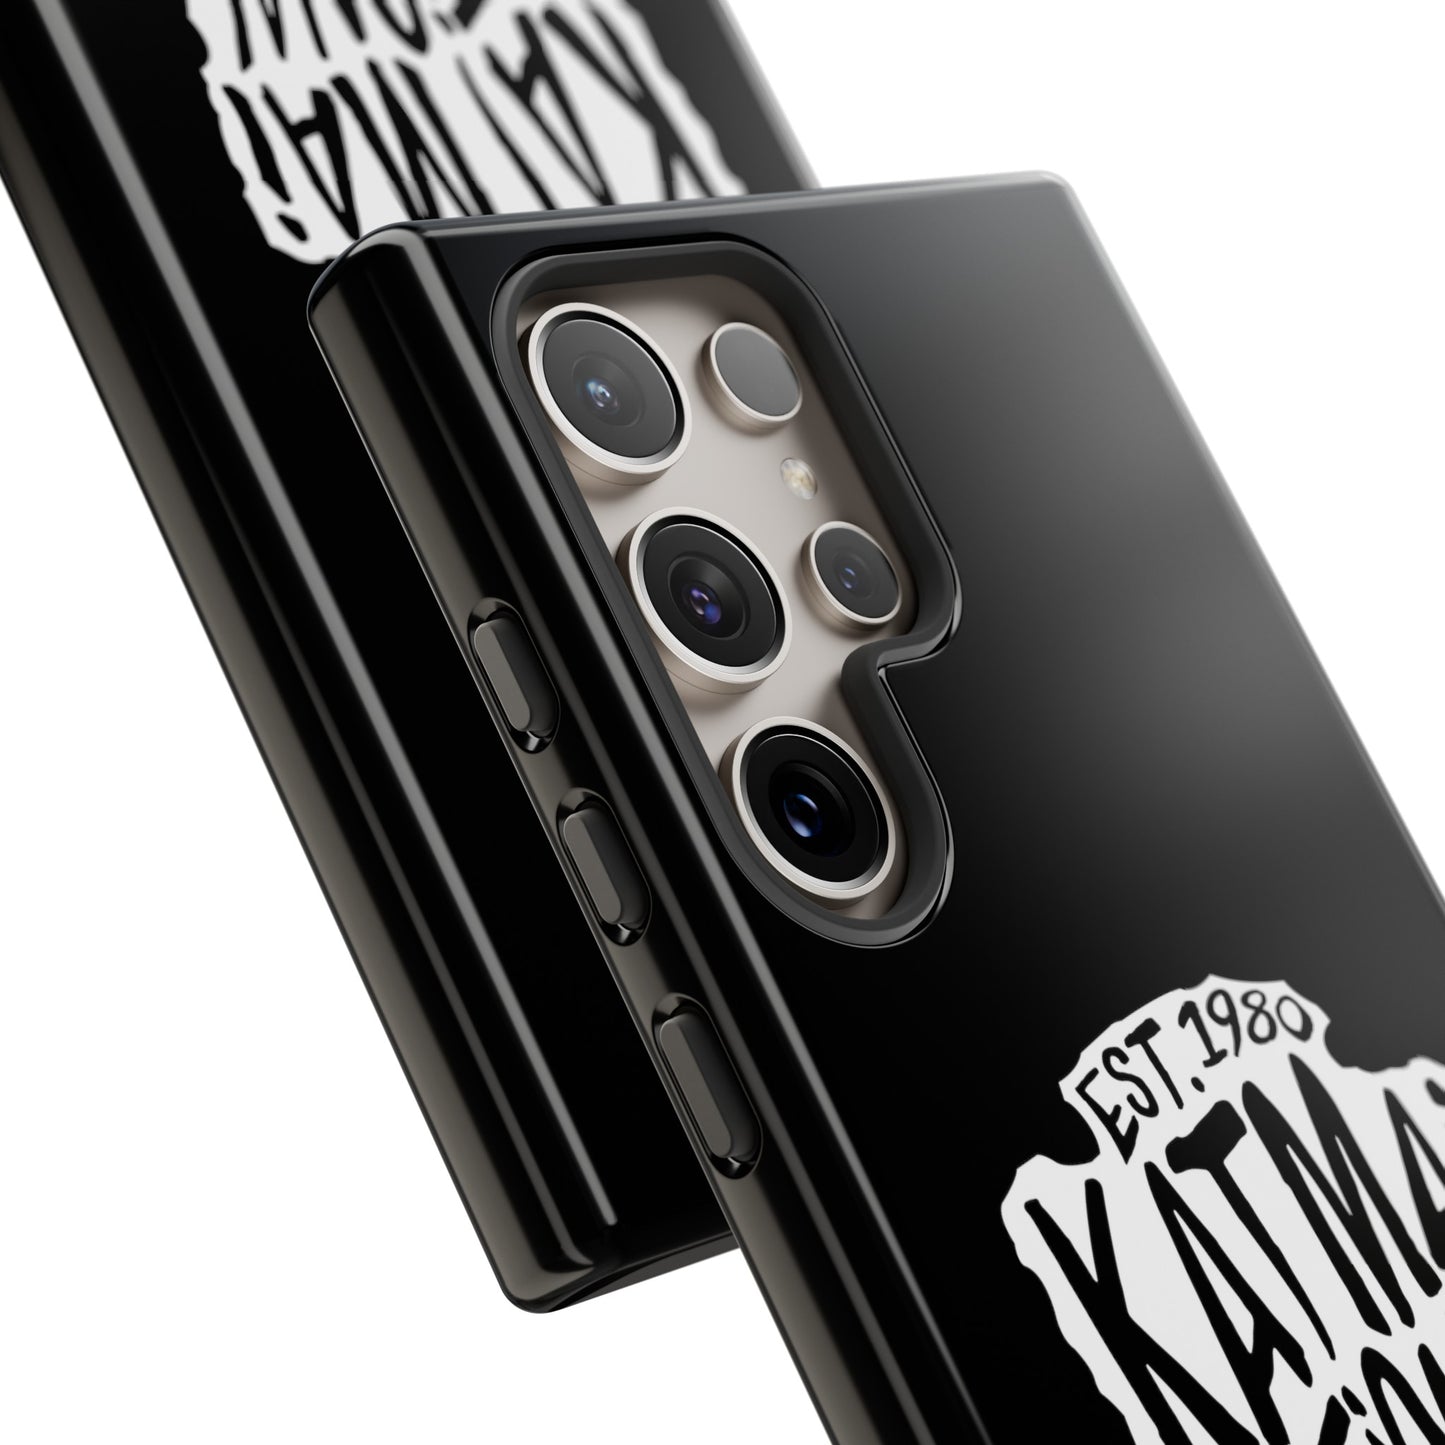 Katmai National Park Phone Case - Arrowhead Design